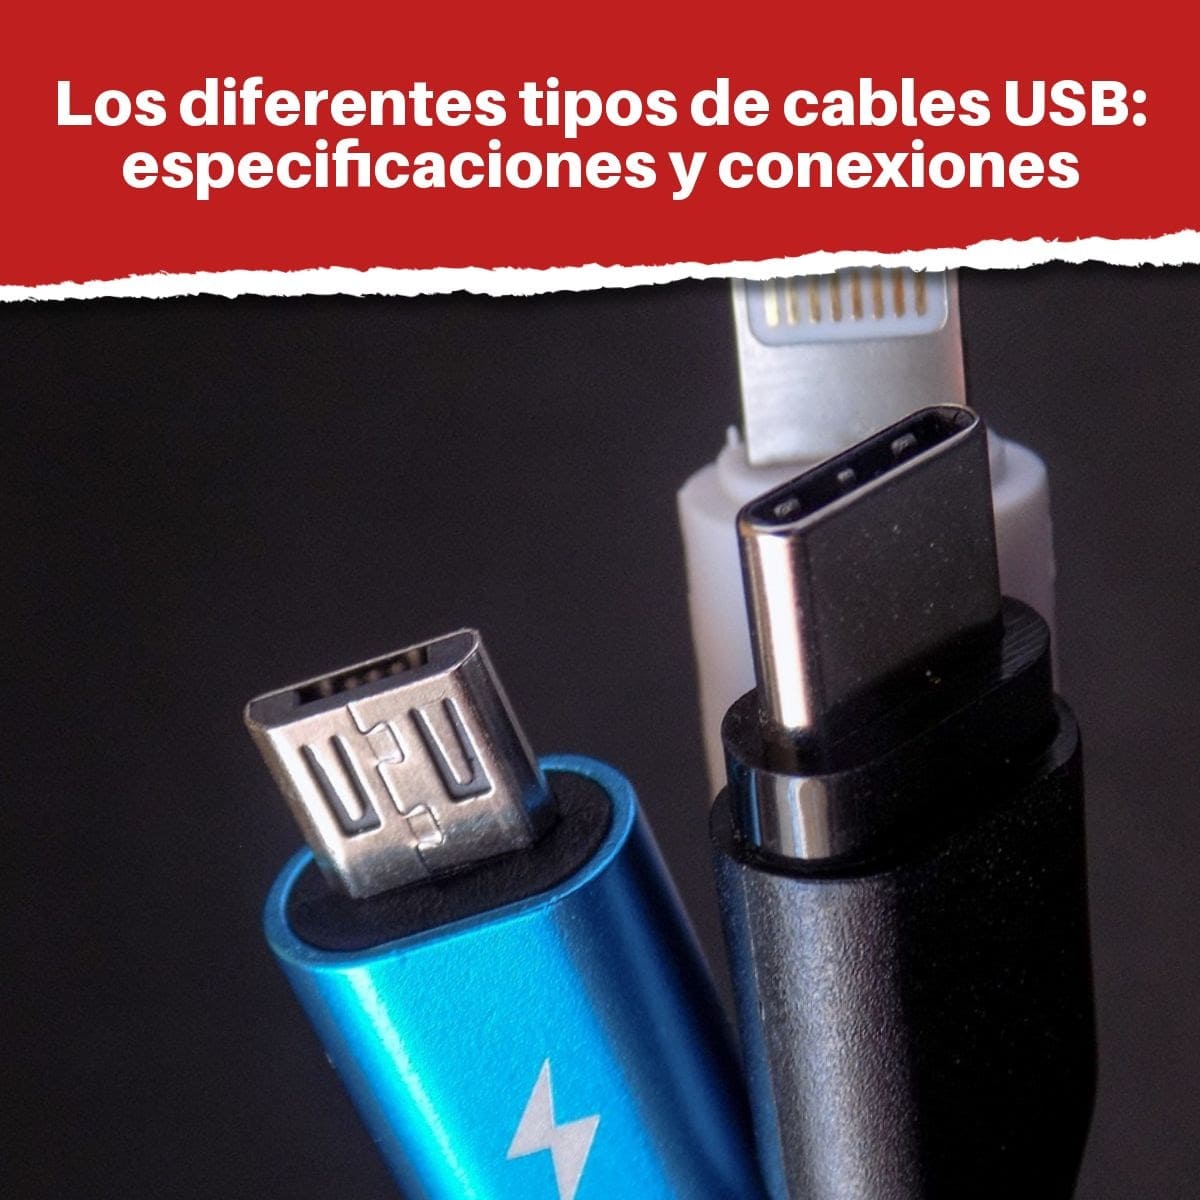 Cables USB: especificaciones y conexiones tipo A, C) - Tipos de